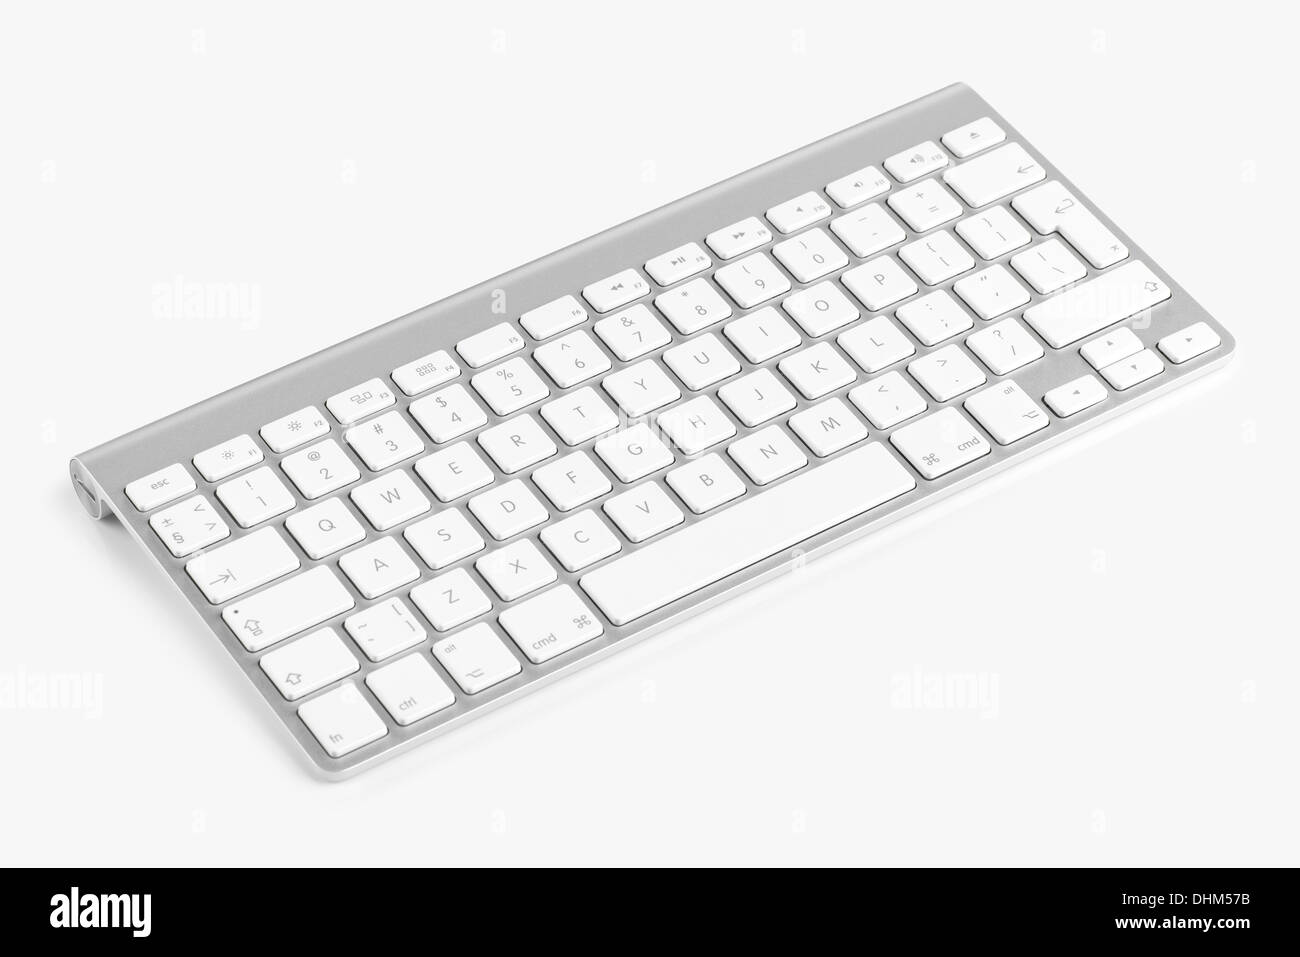 Drahtlose Computer-Tastatur mit dem englischen Alphabet isoliert auf weißem Hintergrund Stockfoto